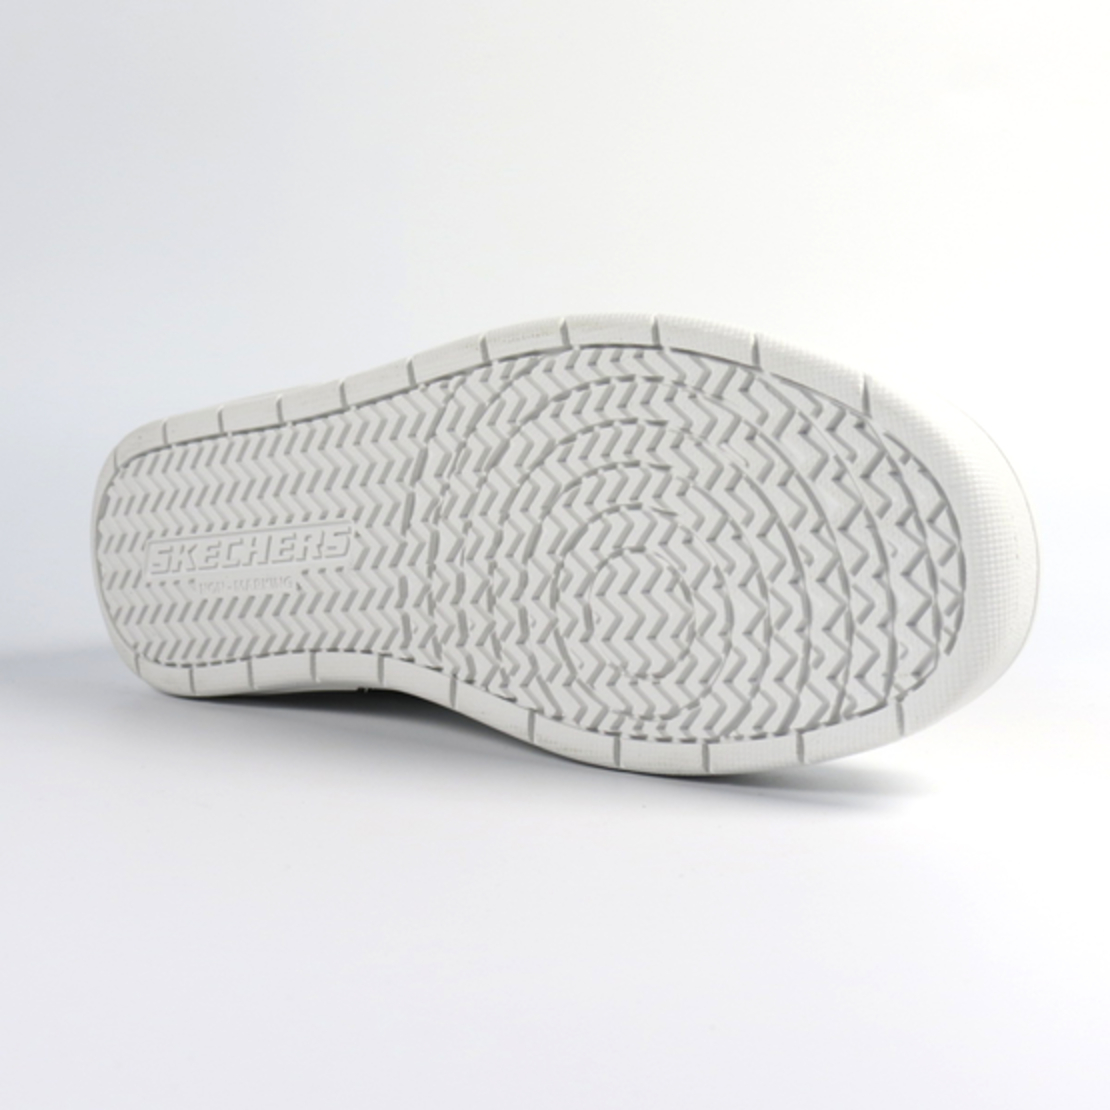 נעלי סקצ'רס לנשים ונוער | Skechers Smooth Street - Genzo